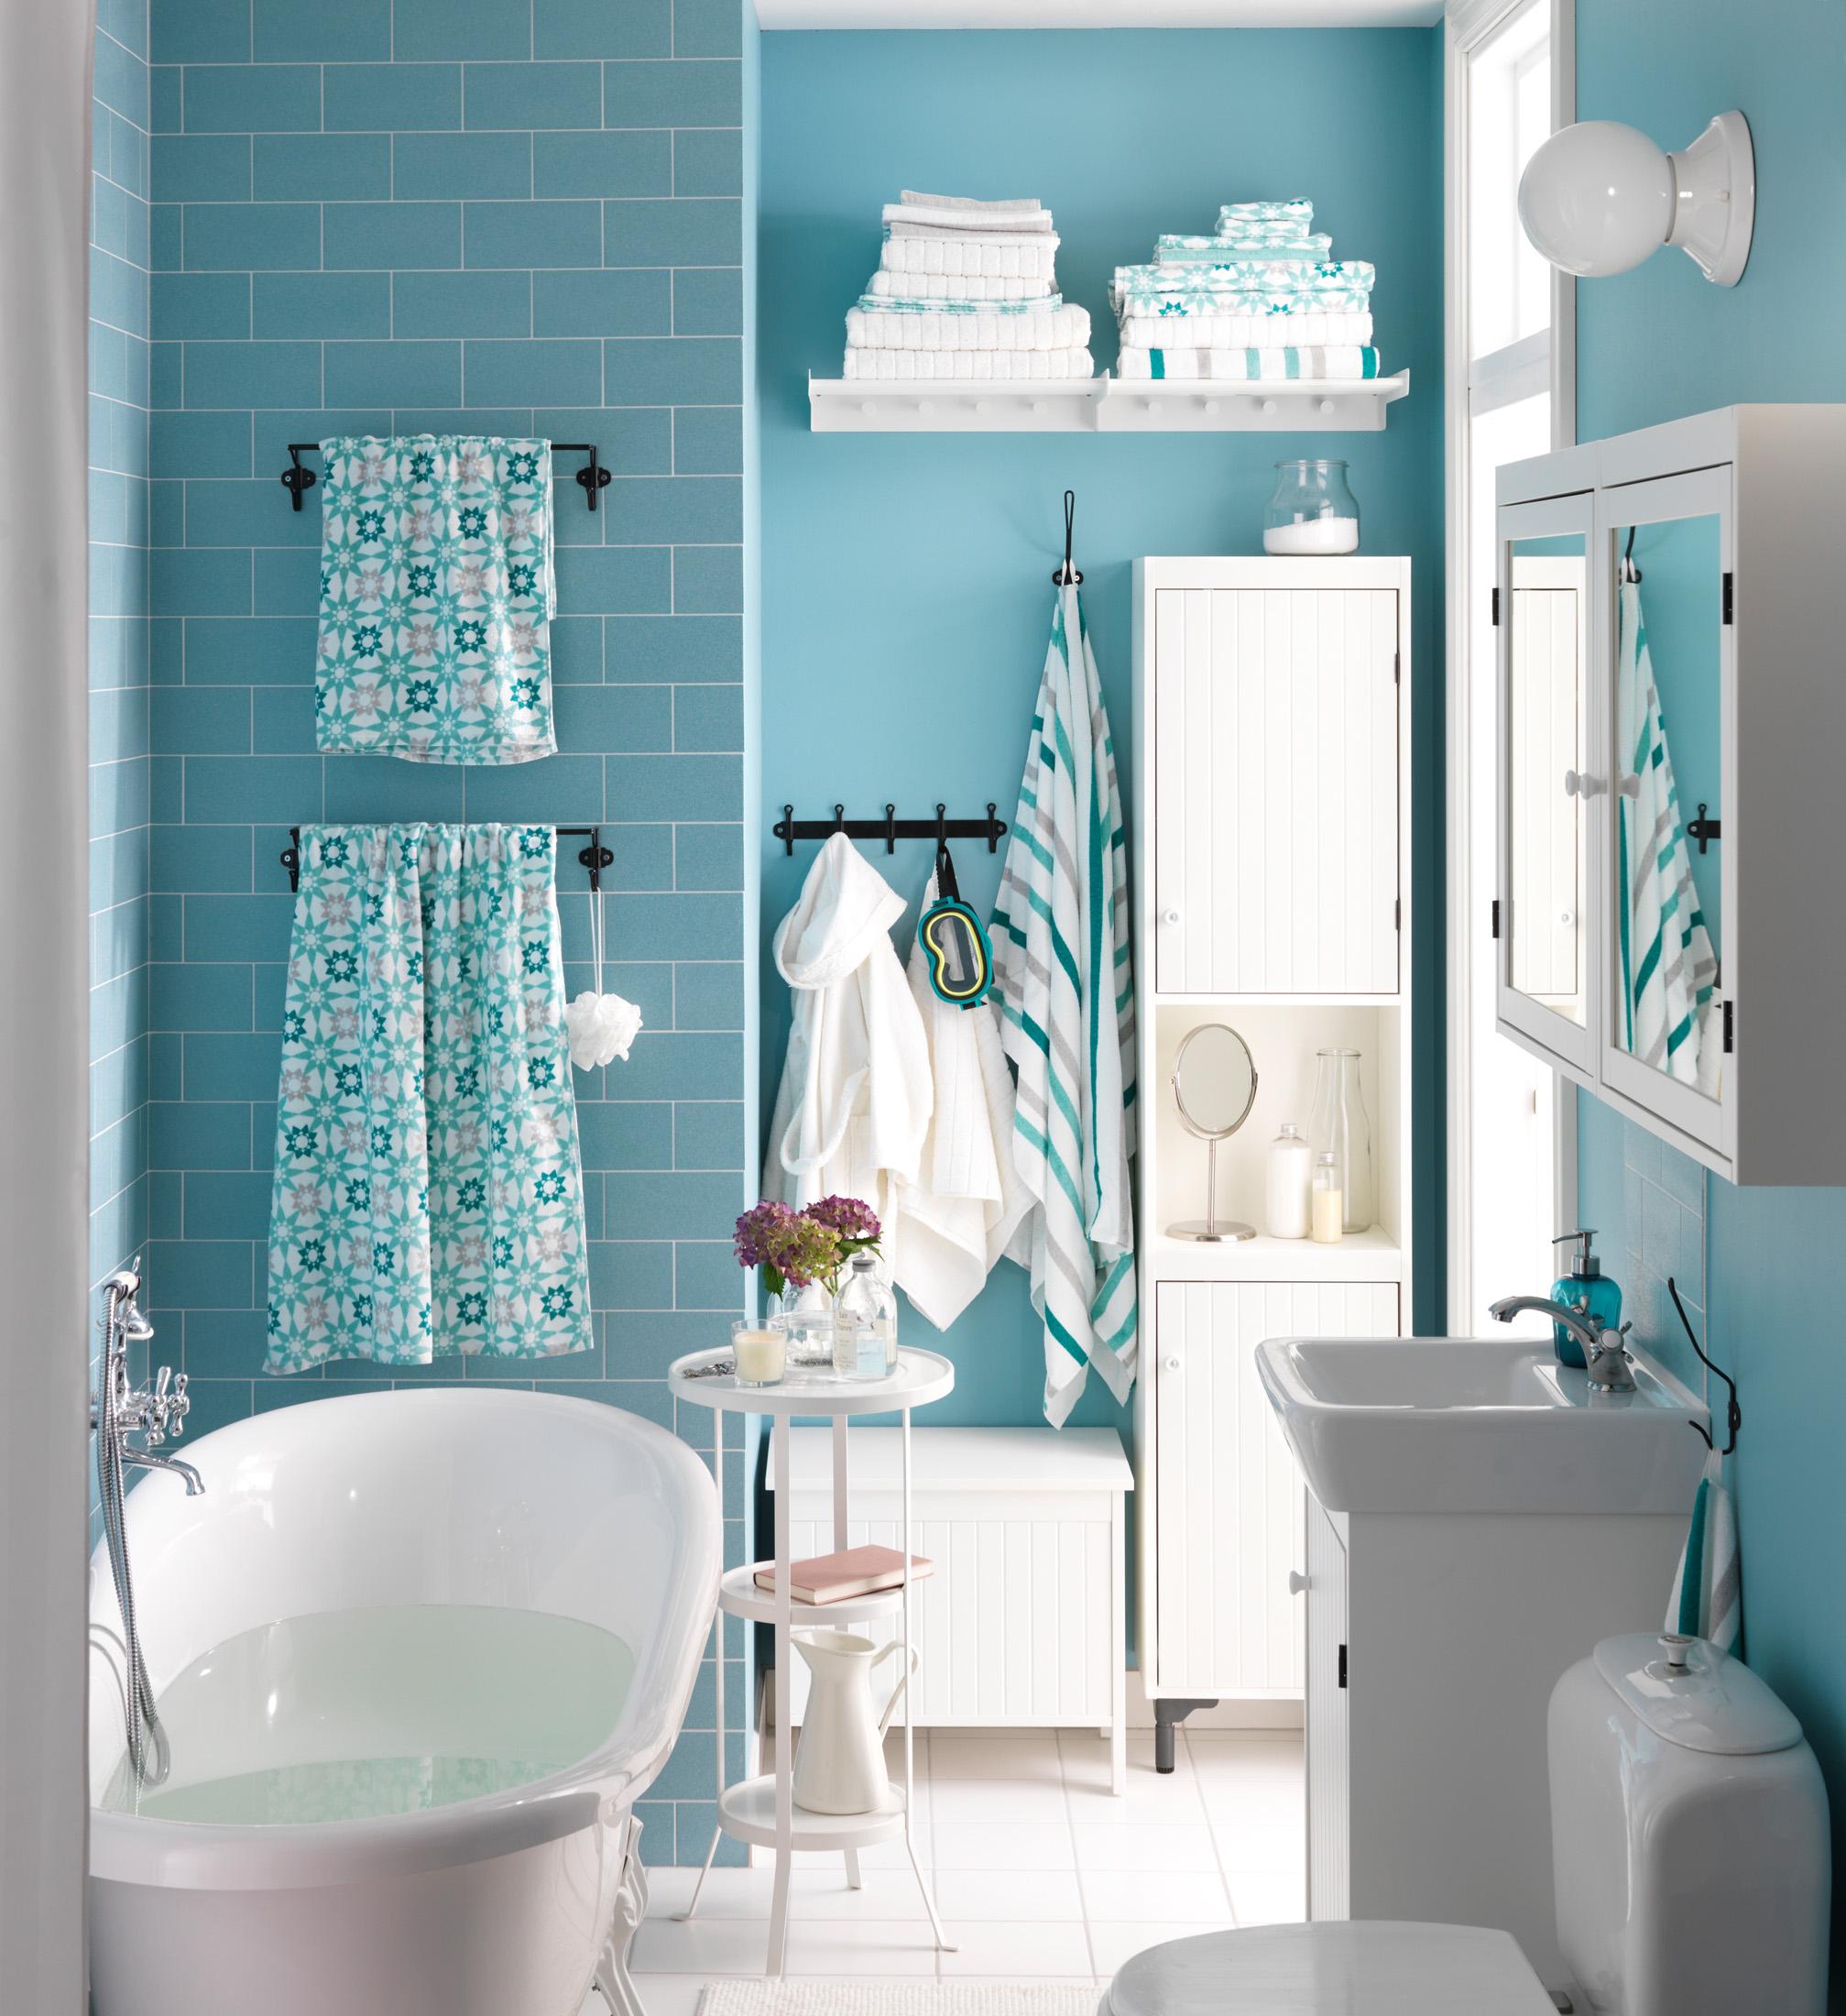 Kleines Badezimmer gestalten #beistelltisch #wandfarbe #hängeschrank #badezimmerschrank #wandleuchte #ikea #blauewandfarbe #kleinesbadezimmer ©Inter IKEA Systems B.V. 2014